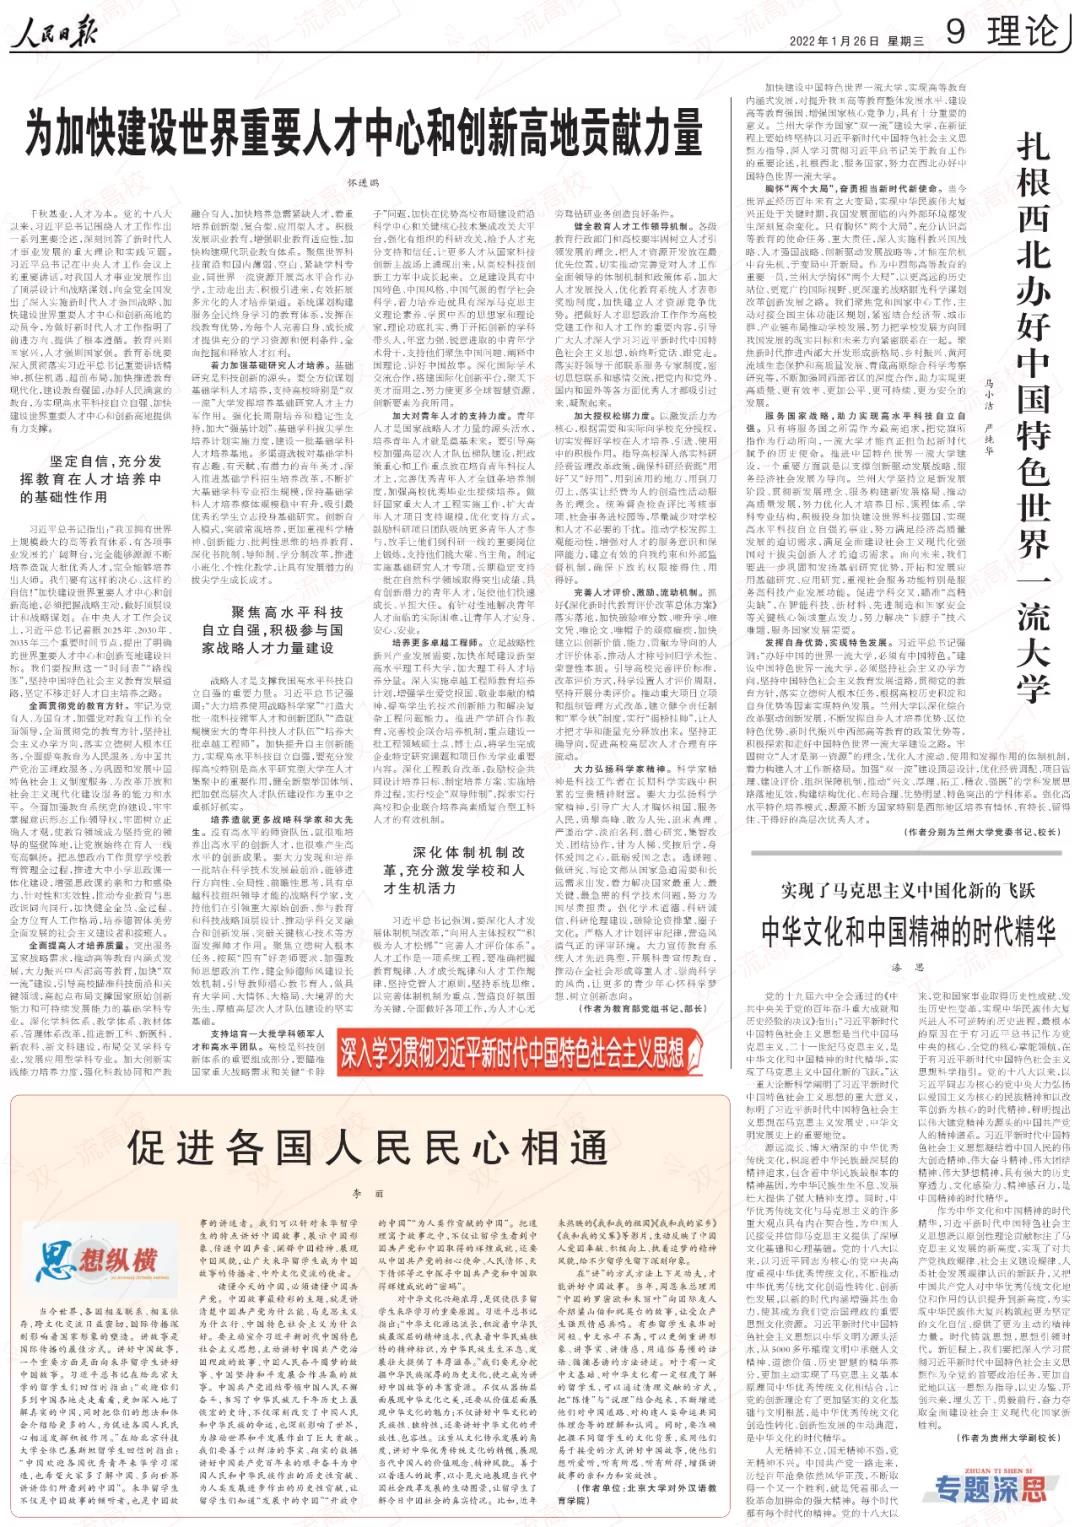 教育部长怀进鹏在《人民日报》发表署名文章1.jpg